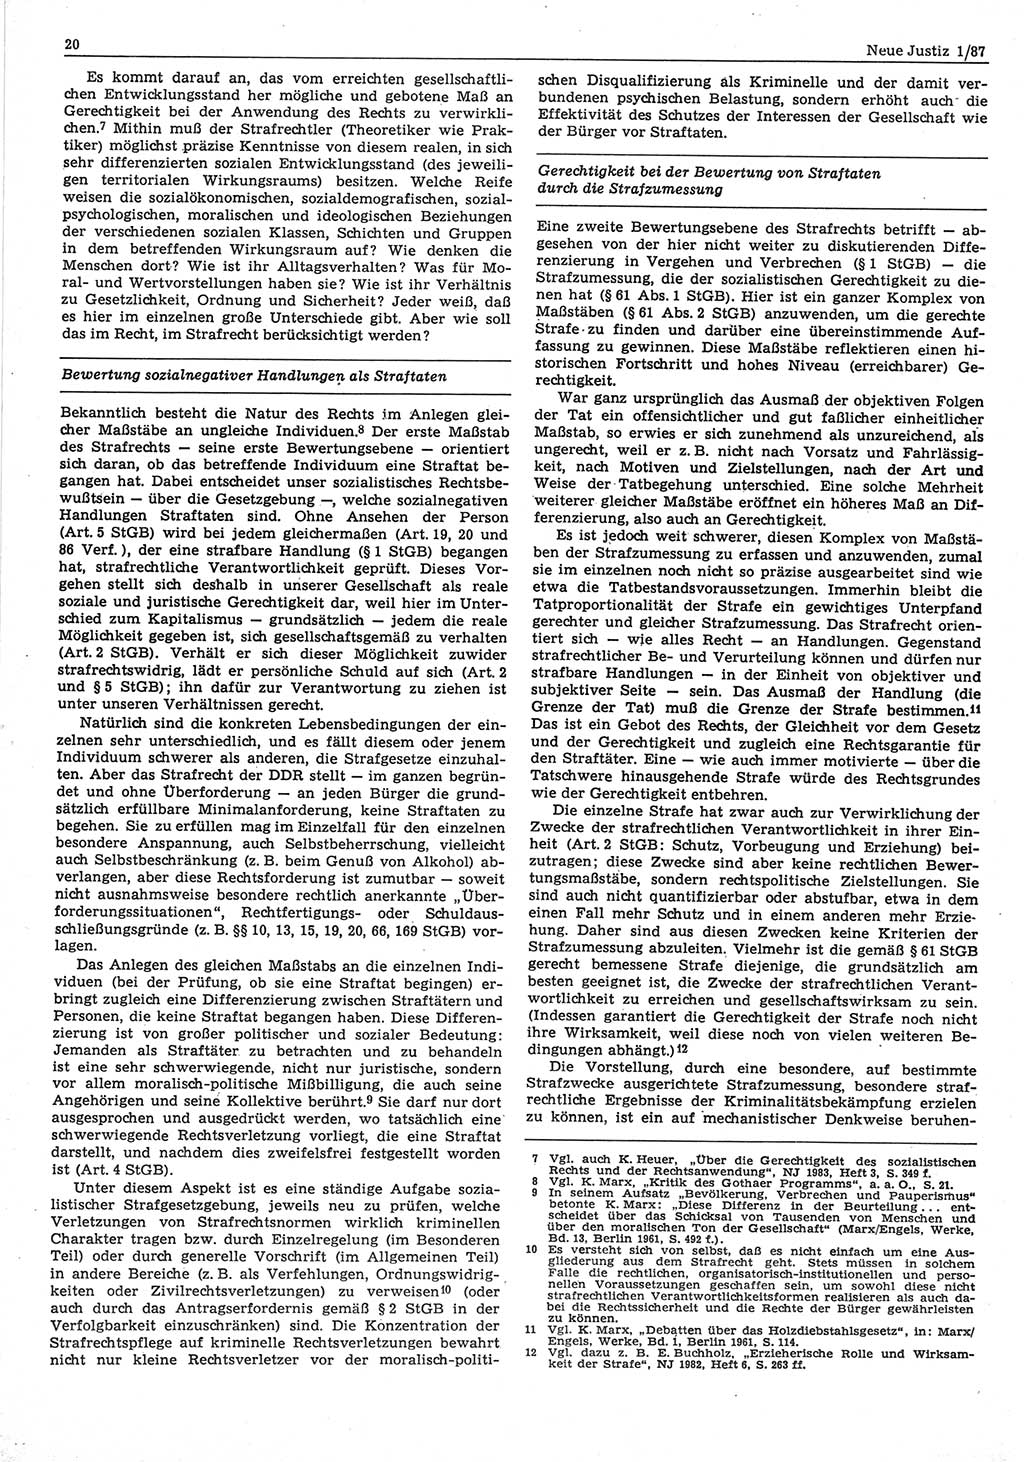 Neue Justiz (NJ), Zeitschrift für sozialistisches Recht und Gesetzlichkeit [Deutsche Demokratische Republik (DDR)], 41. Jahrgang 1987, Seite 20 (NJ DDR 1987, S. 20)